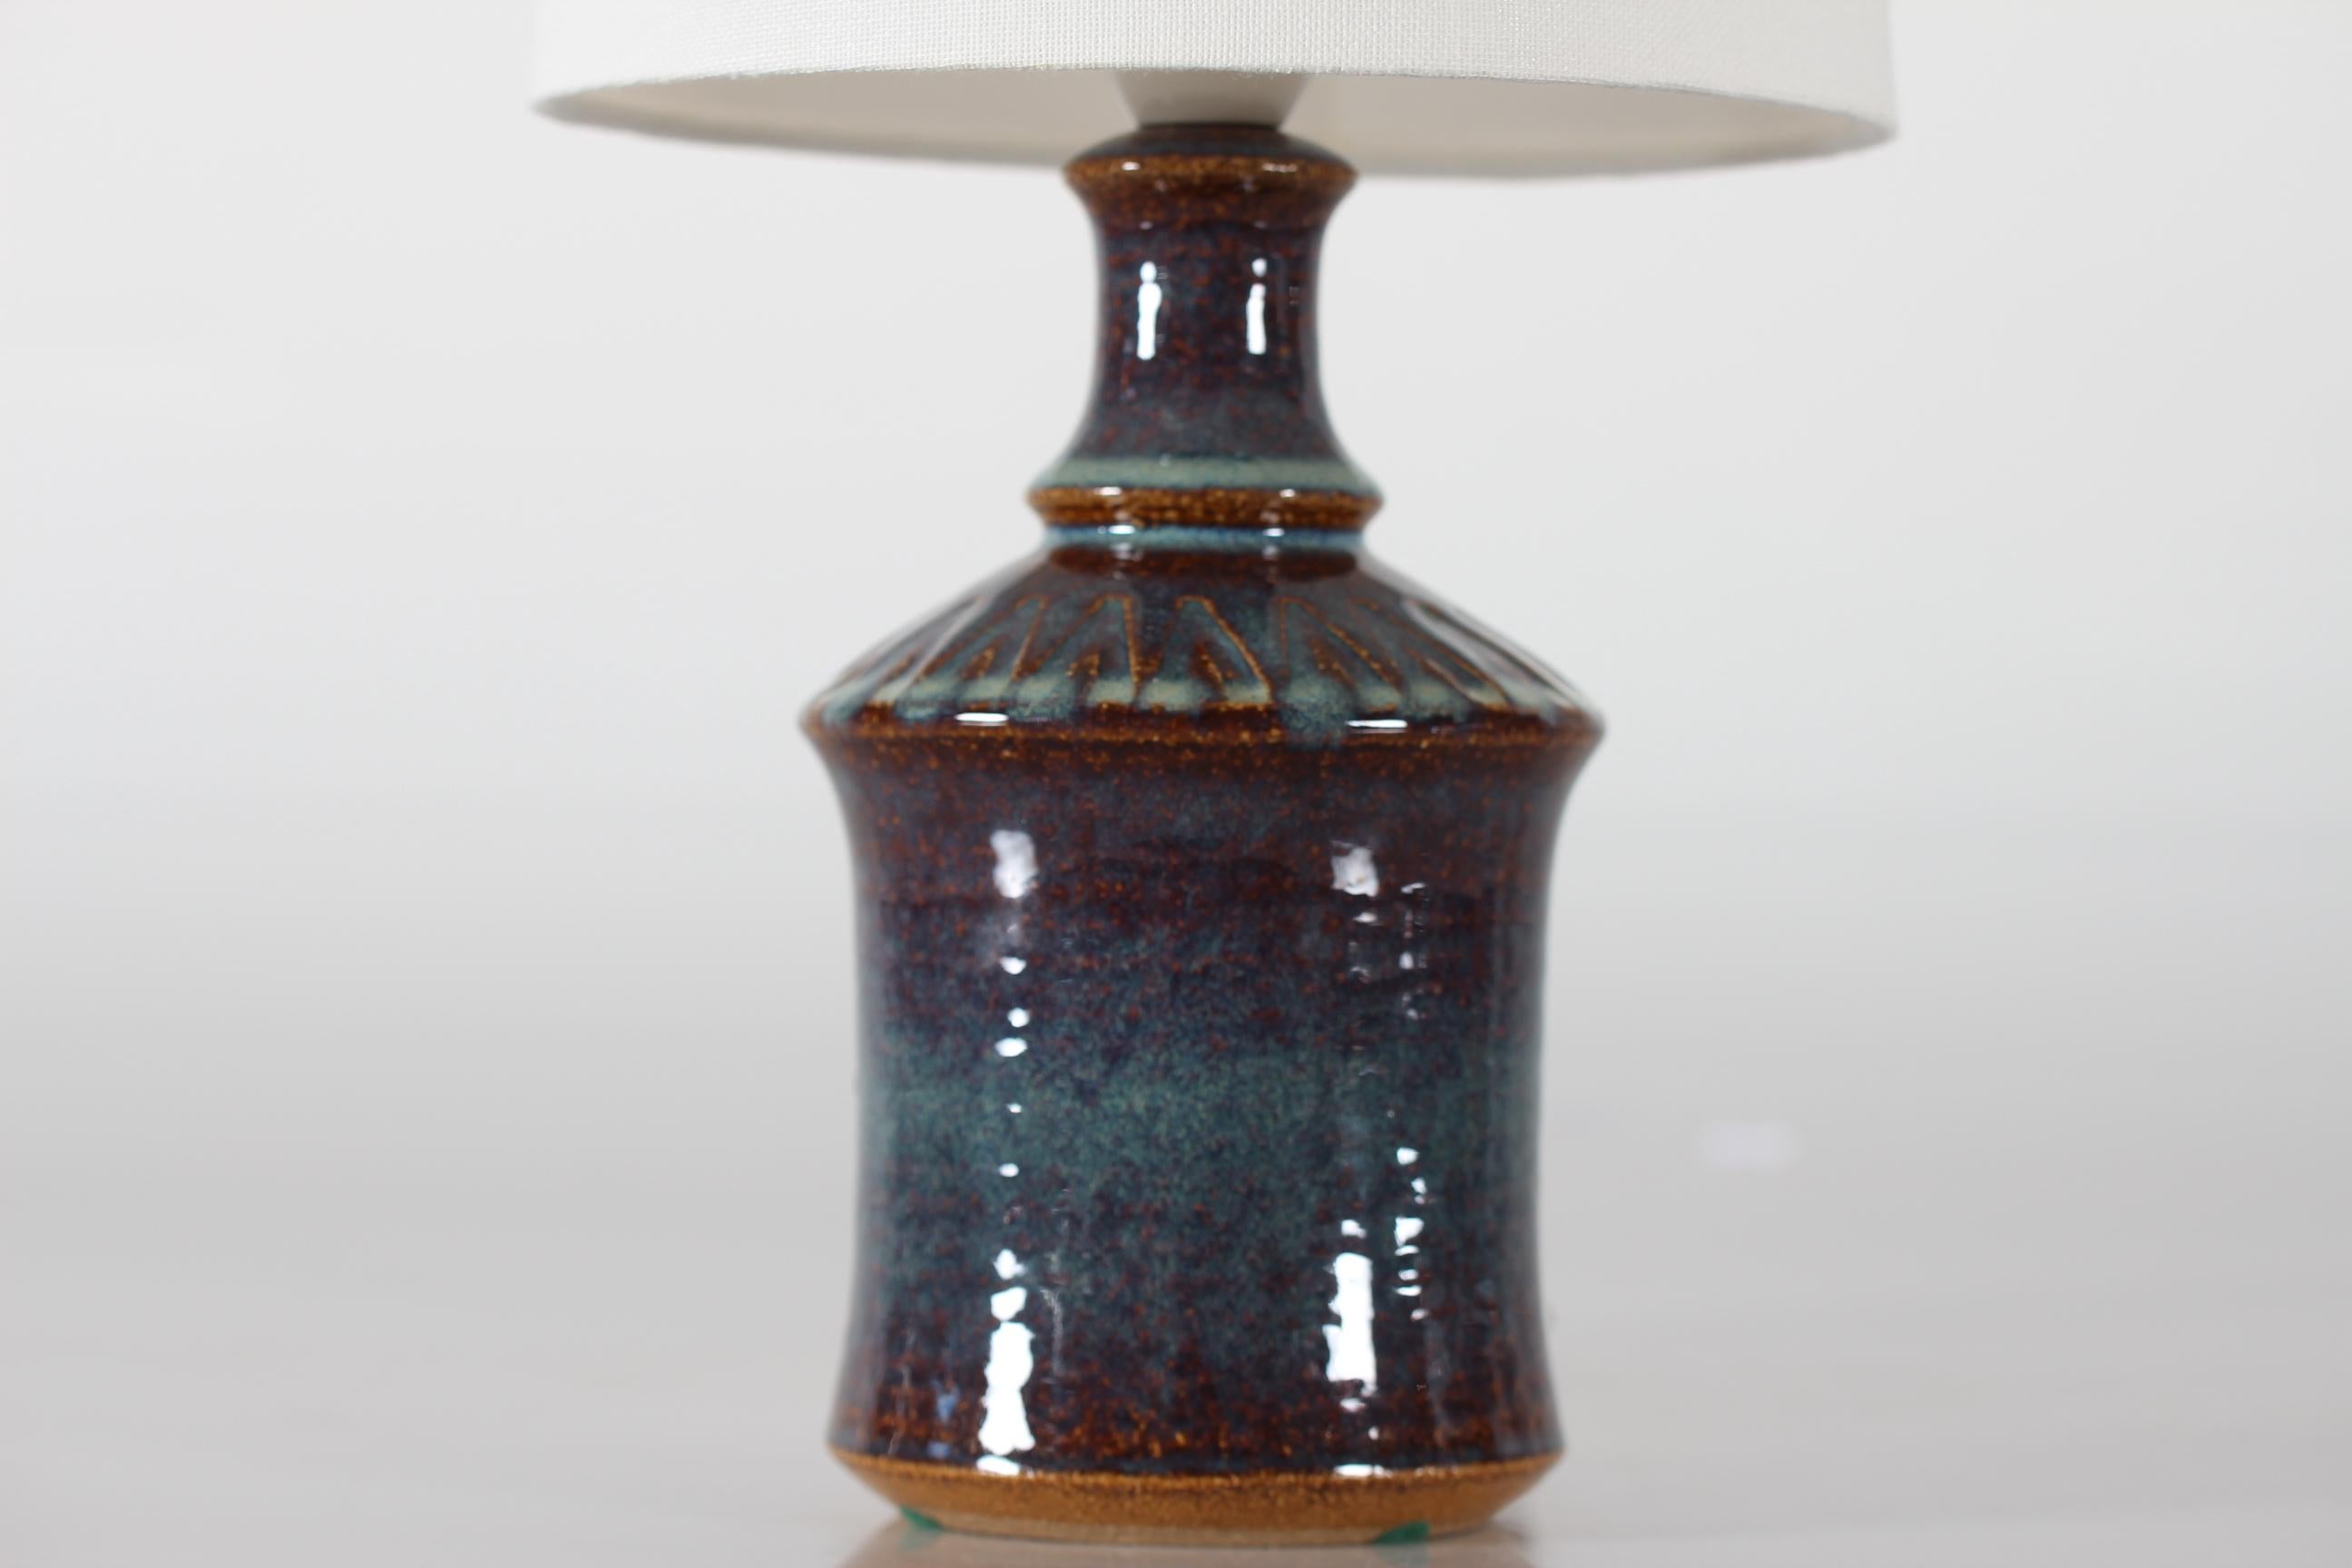 Petite lampe de table en grès de Søholm Stentøj, Danemark, fabriquée vers les années 1960. 
La lampe présente une glaçure brillante dans des tons de bleu, turquoise et brun sur le motif géométrique incisé dans la partie supérieure du pied de la